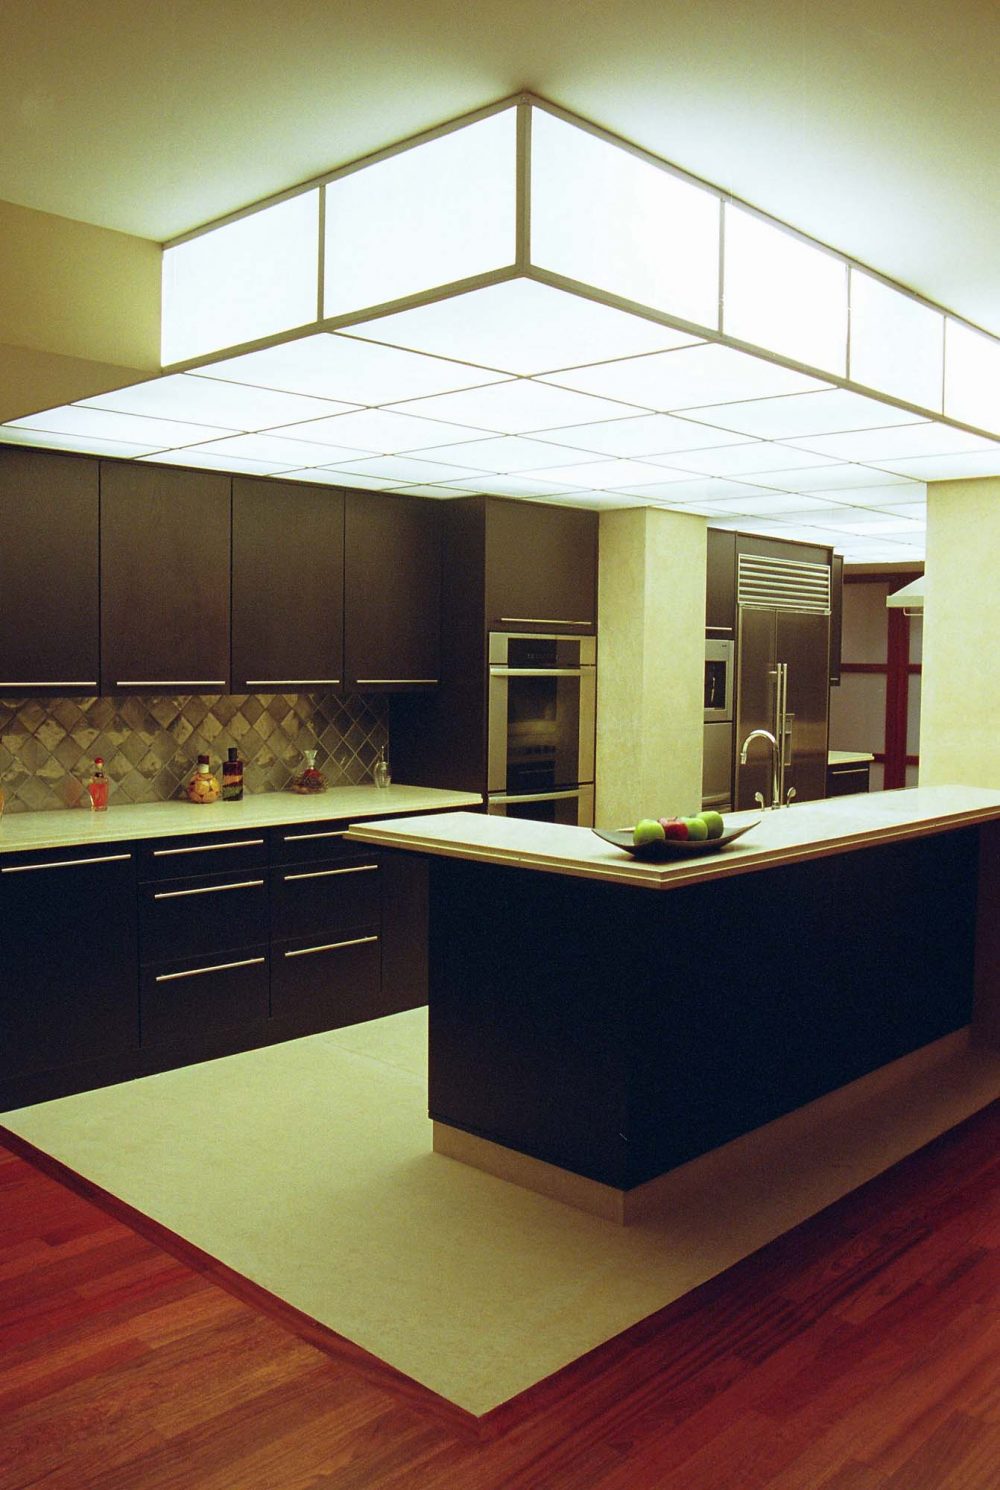 建材的选择进一步彰显了厨房的核心地位。